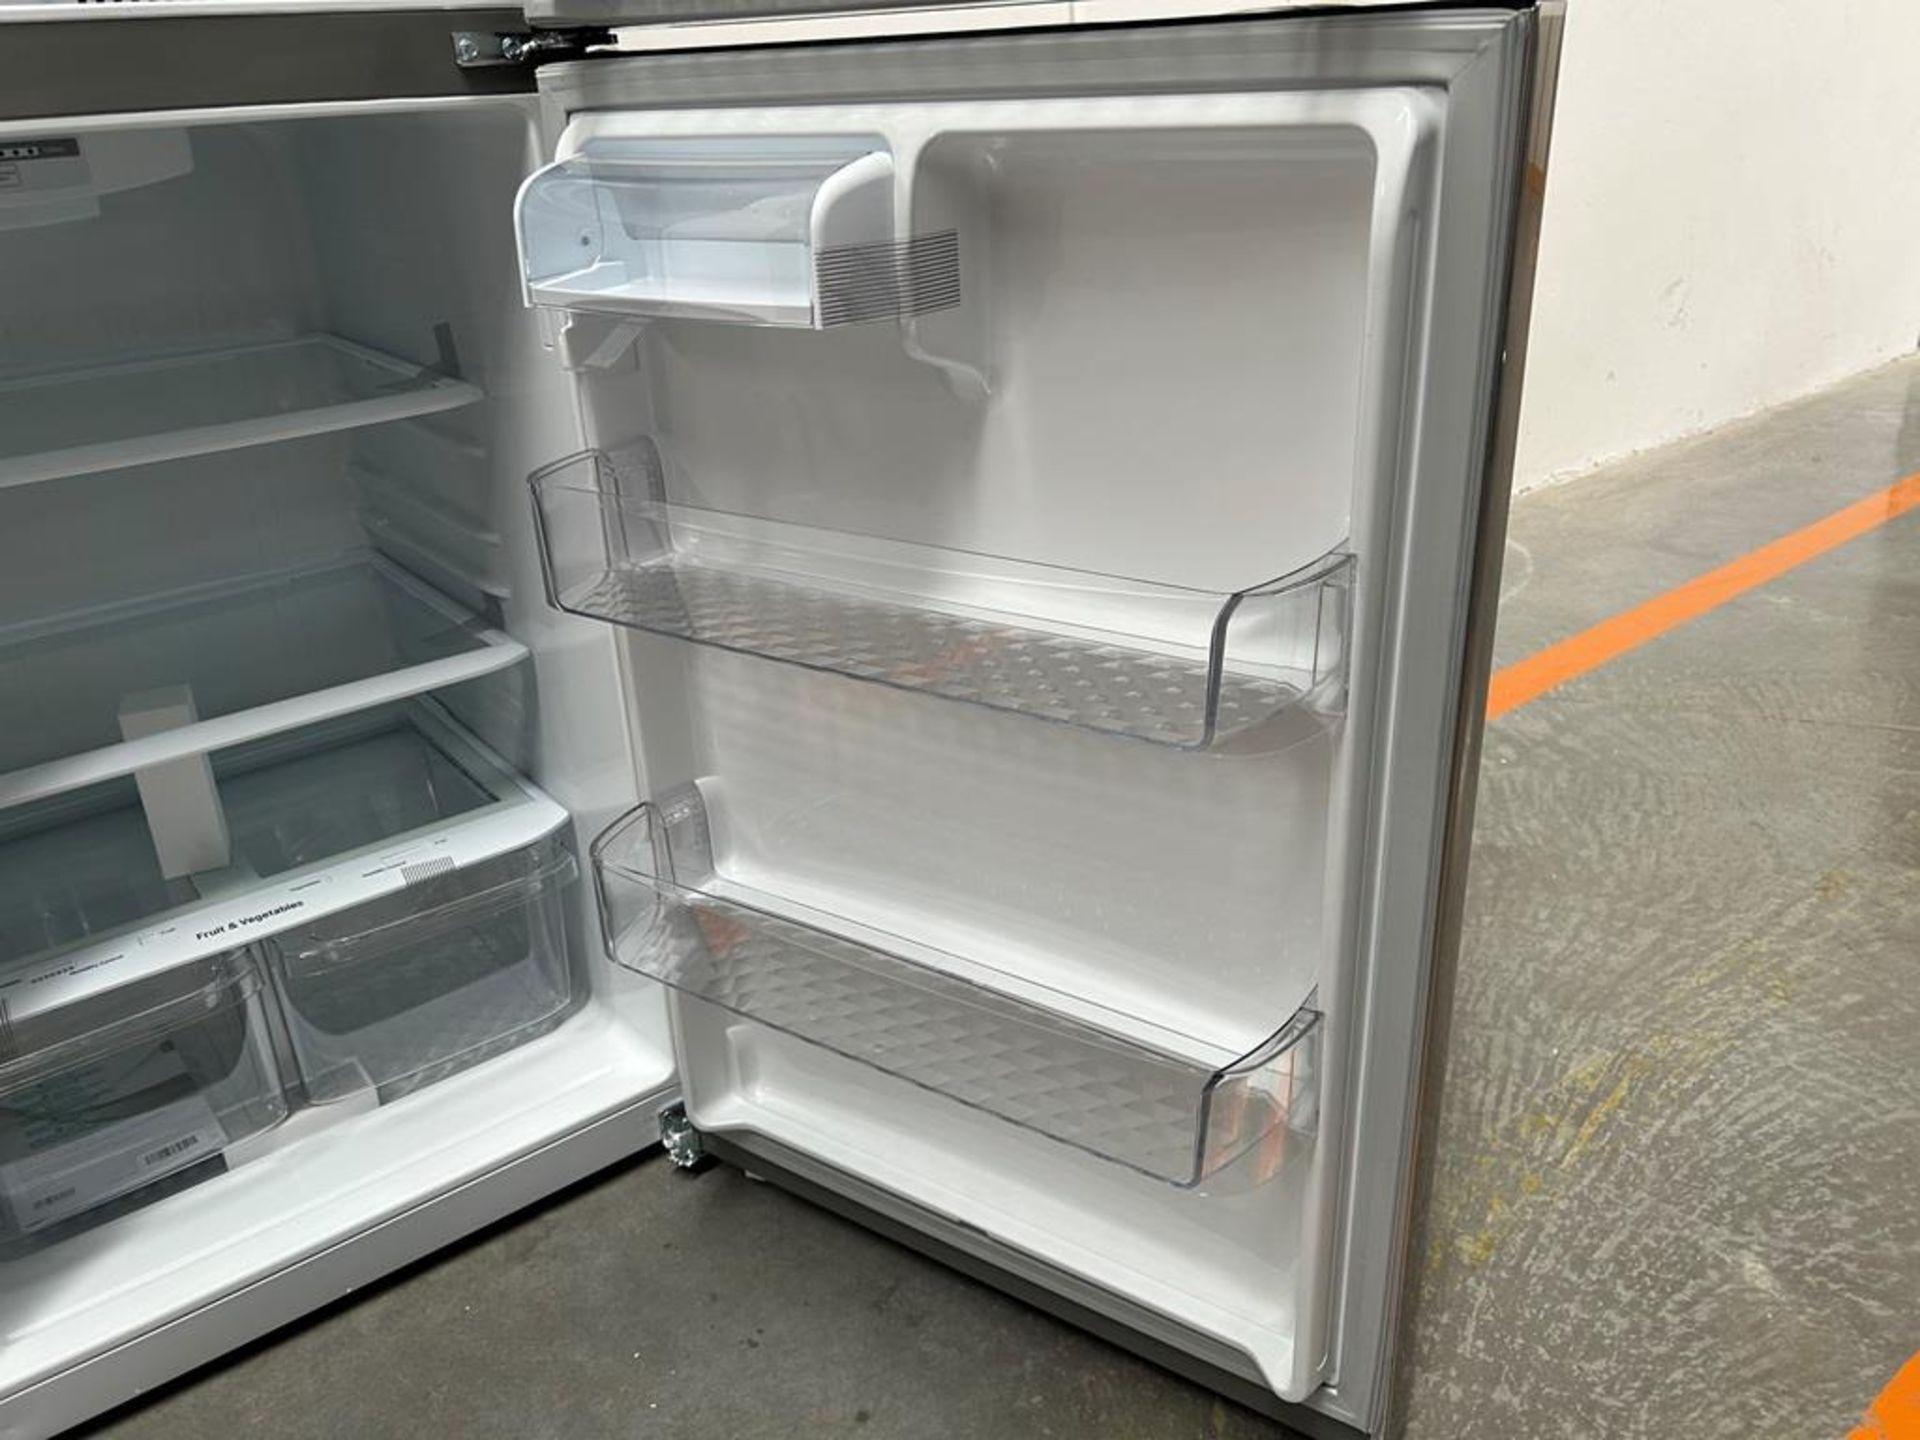 (NUEVO) Refrigerador Marca LG, Modelo LT57BPSX, Serie 1U863, Color GRIS - Image 8 of 11